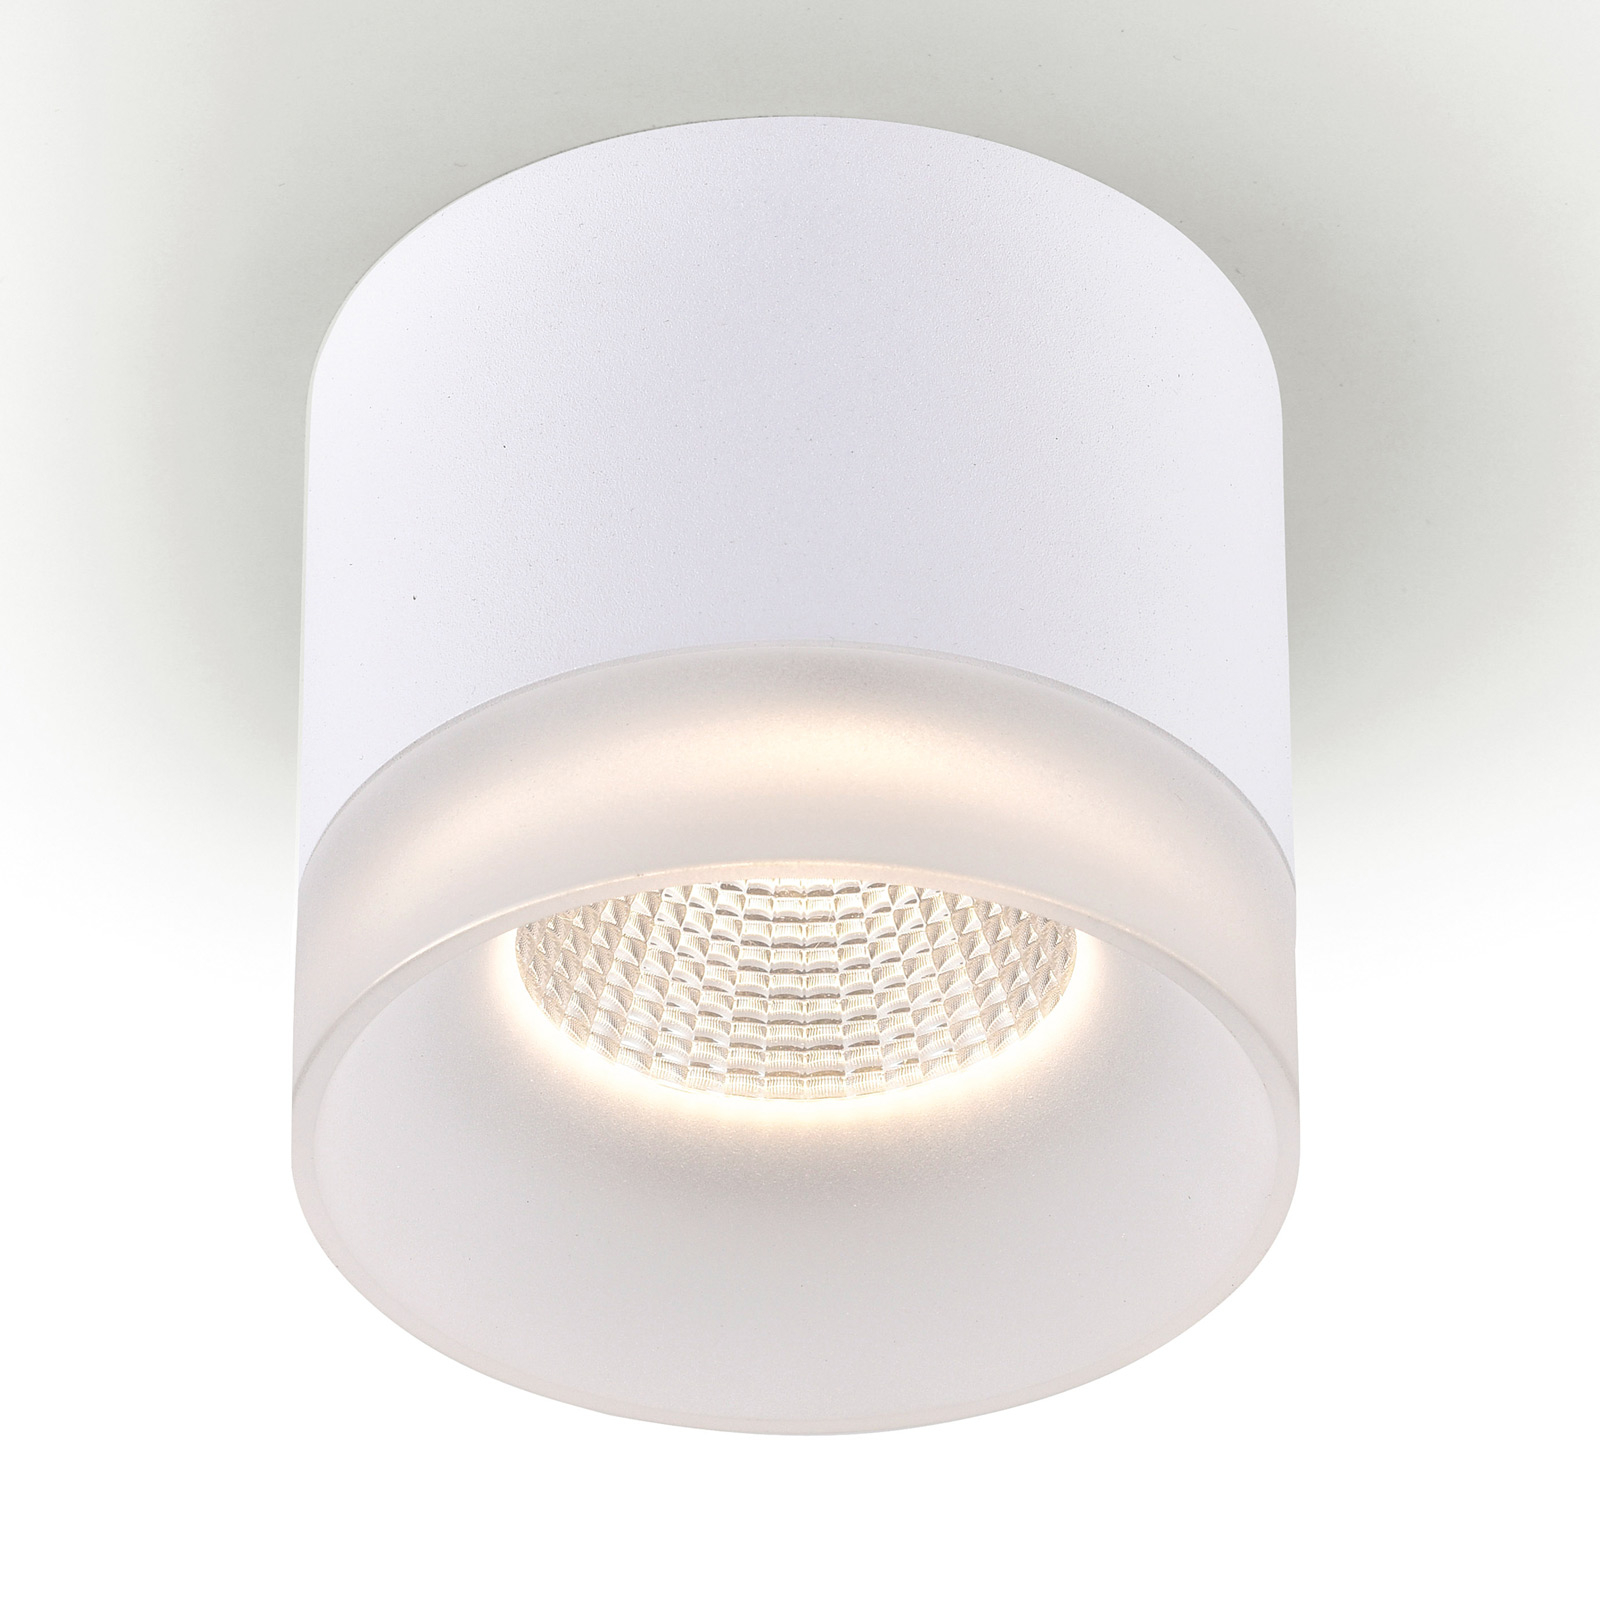 BRUMBERG Kegon downlight LED, 9,8 x 10,8 cm